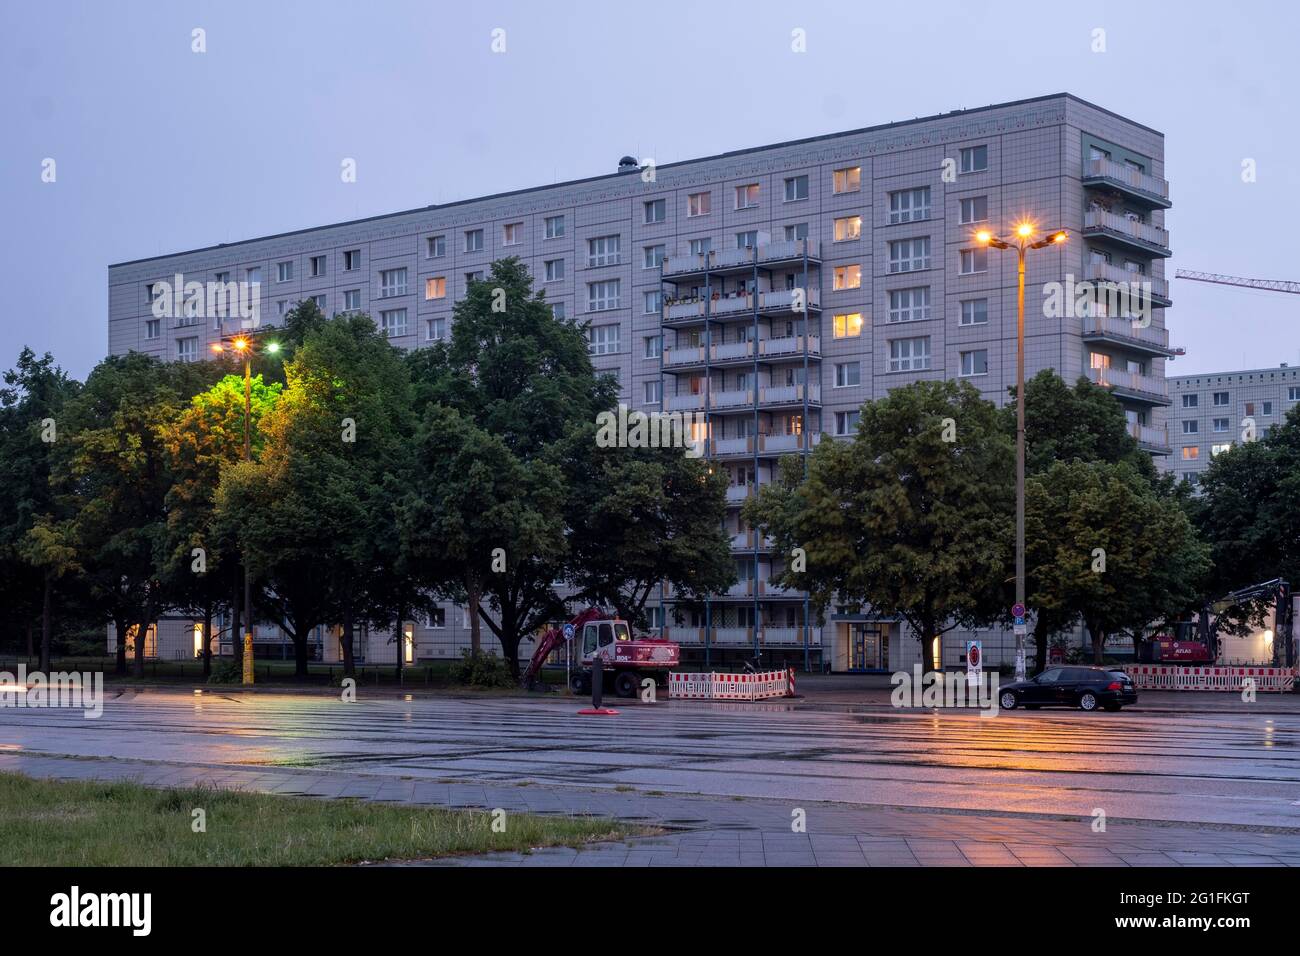 Immeuble résidentiel classé QP 64, est Karl-Marx-Allee à Alexanderplatz, crépuscule, architectes Felz, Kuschy, Stallknecht, Berlin-Mitte Banque D'Images